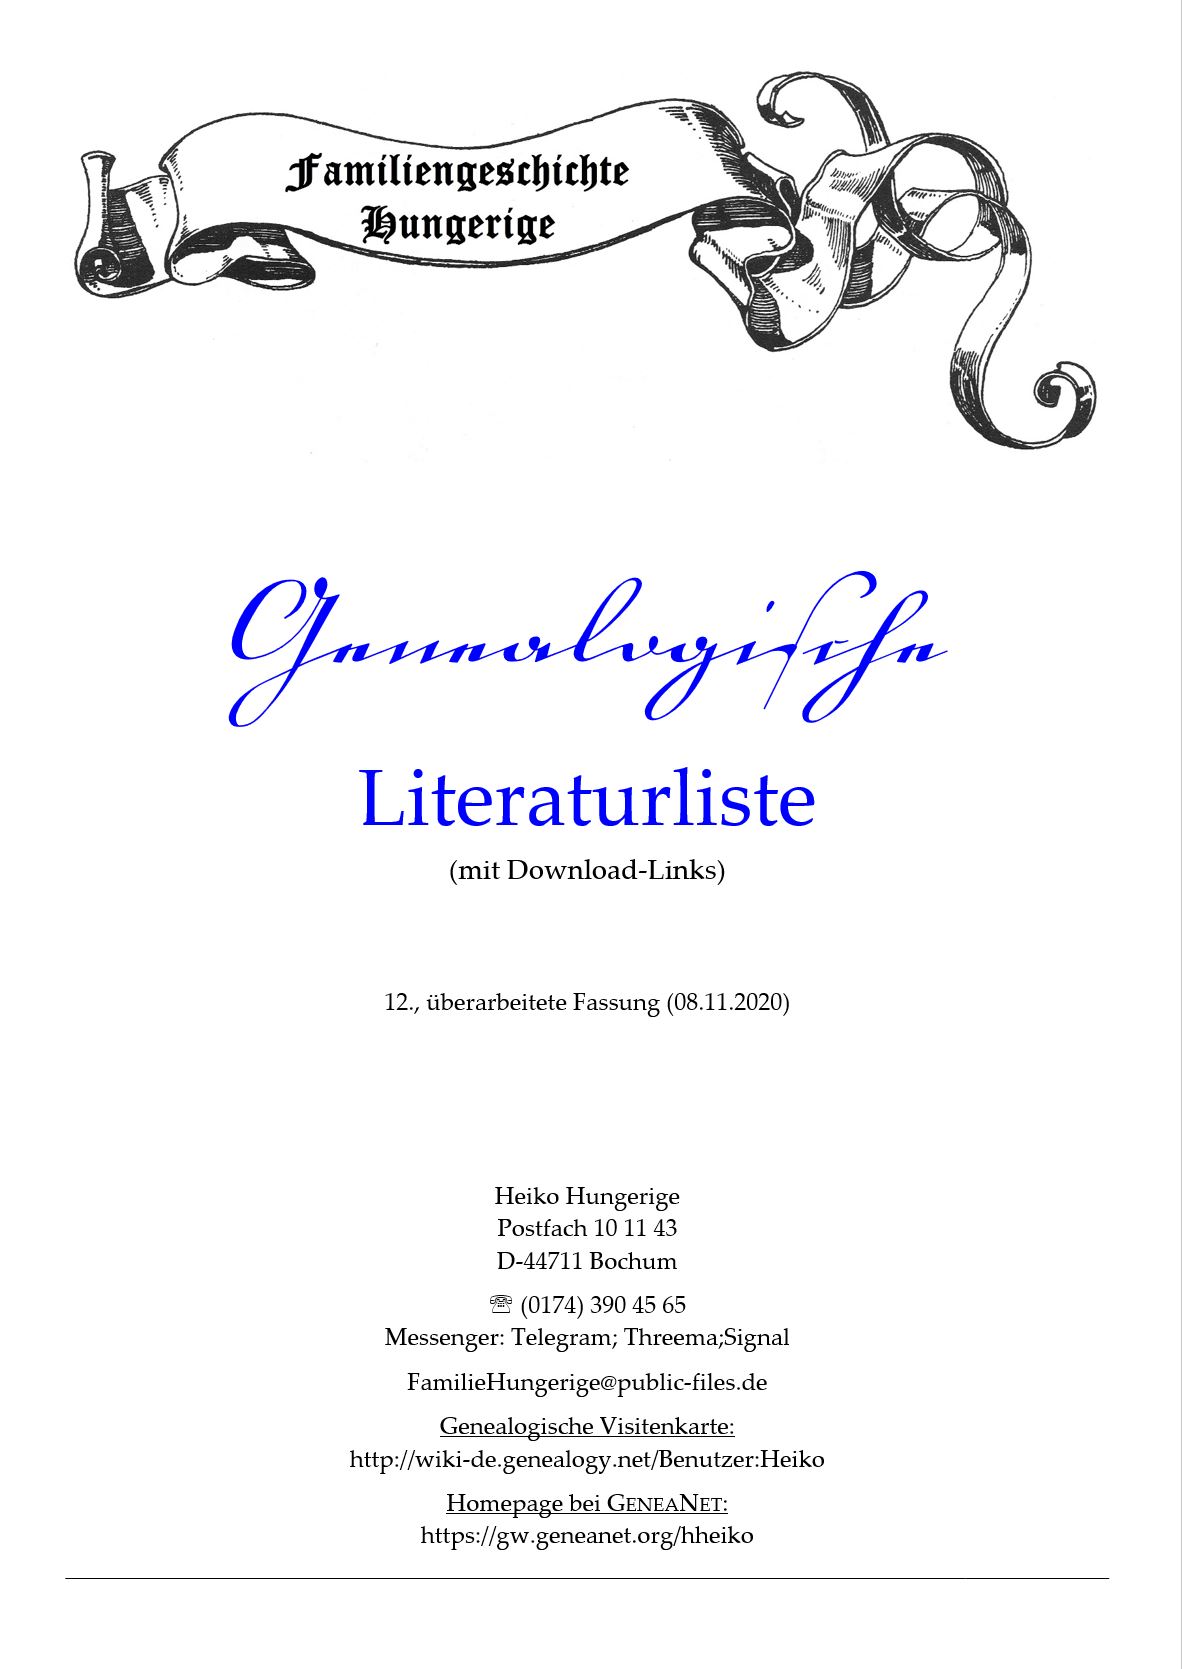 Hungerige (2020), Genealogische Literaturliste (mit Download-Links)